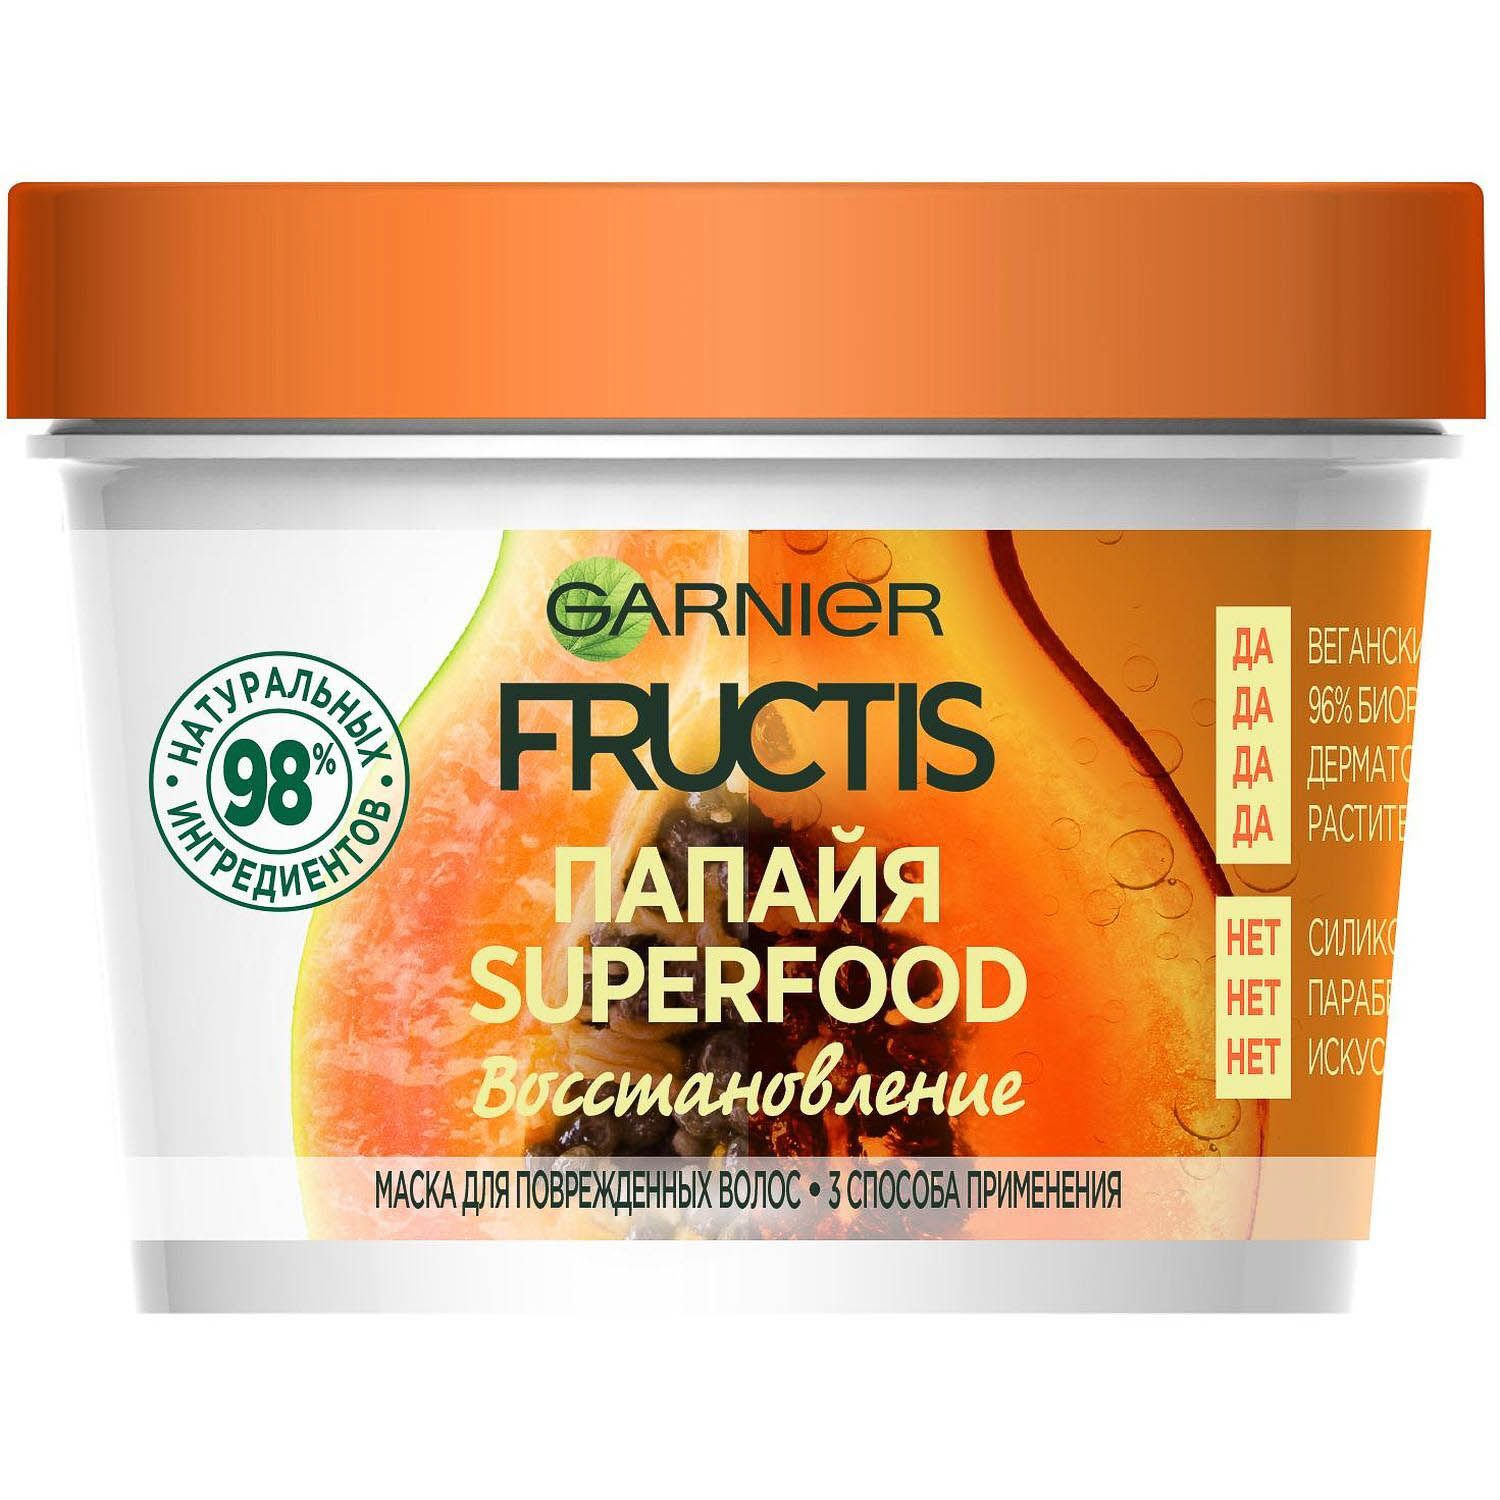 Маска фруктис отзывы. Garnier Fructis Superfood маска для волос 390мл. Garnier Fructis маска 3в1 SOS. Гарнер маска 3 в 1. Fructis папайя Superfood маска.